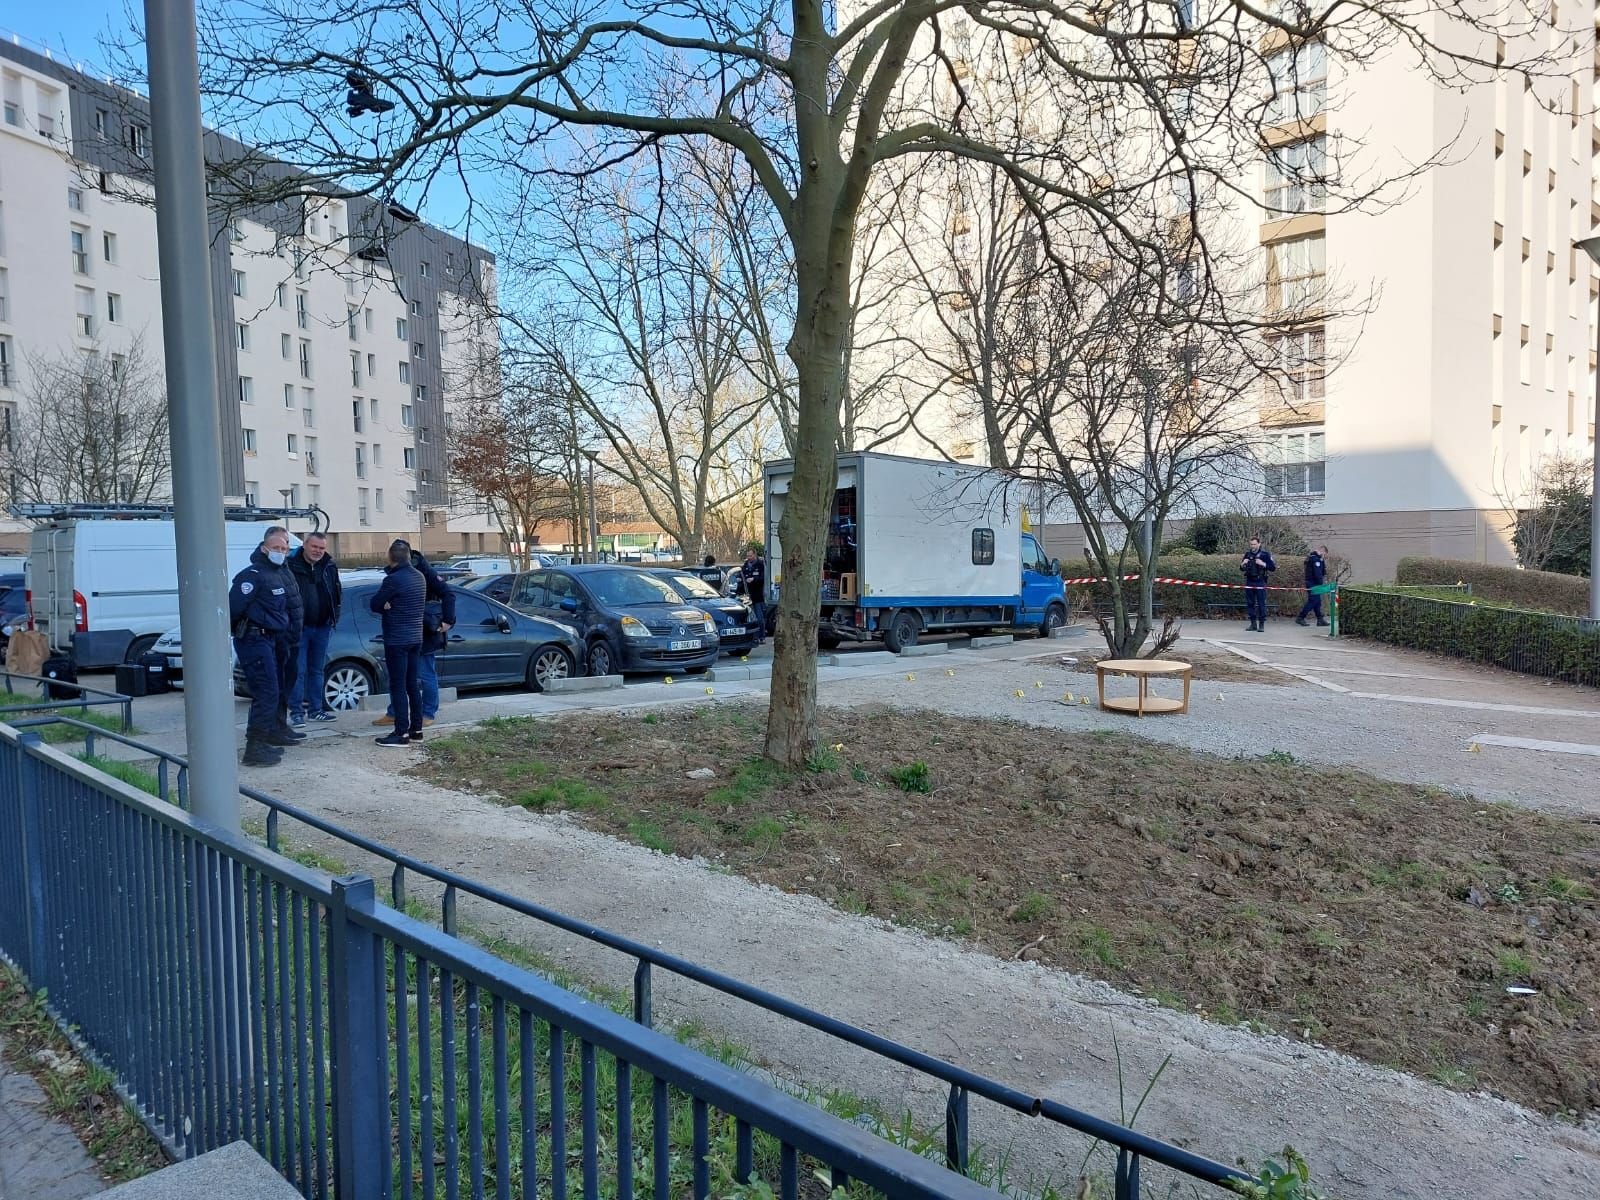 Le 10 mars 2022 à Garges (Val-d'Oise), un homme de 26 ans a été tué par balles. L'un des principaux suspects dans cette affaire vient d'être remis en liberté (Archives). LP/Thibault Chaffotte